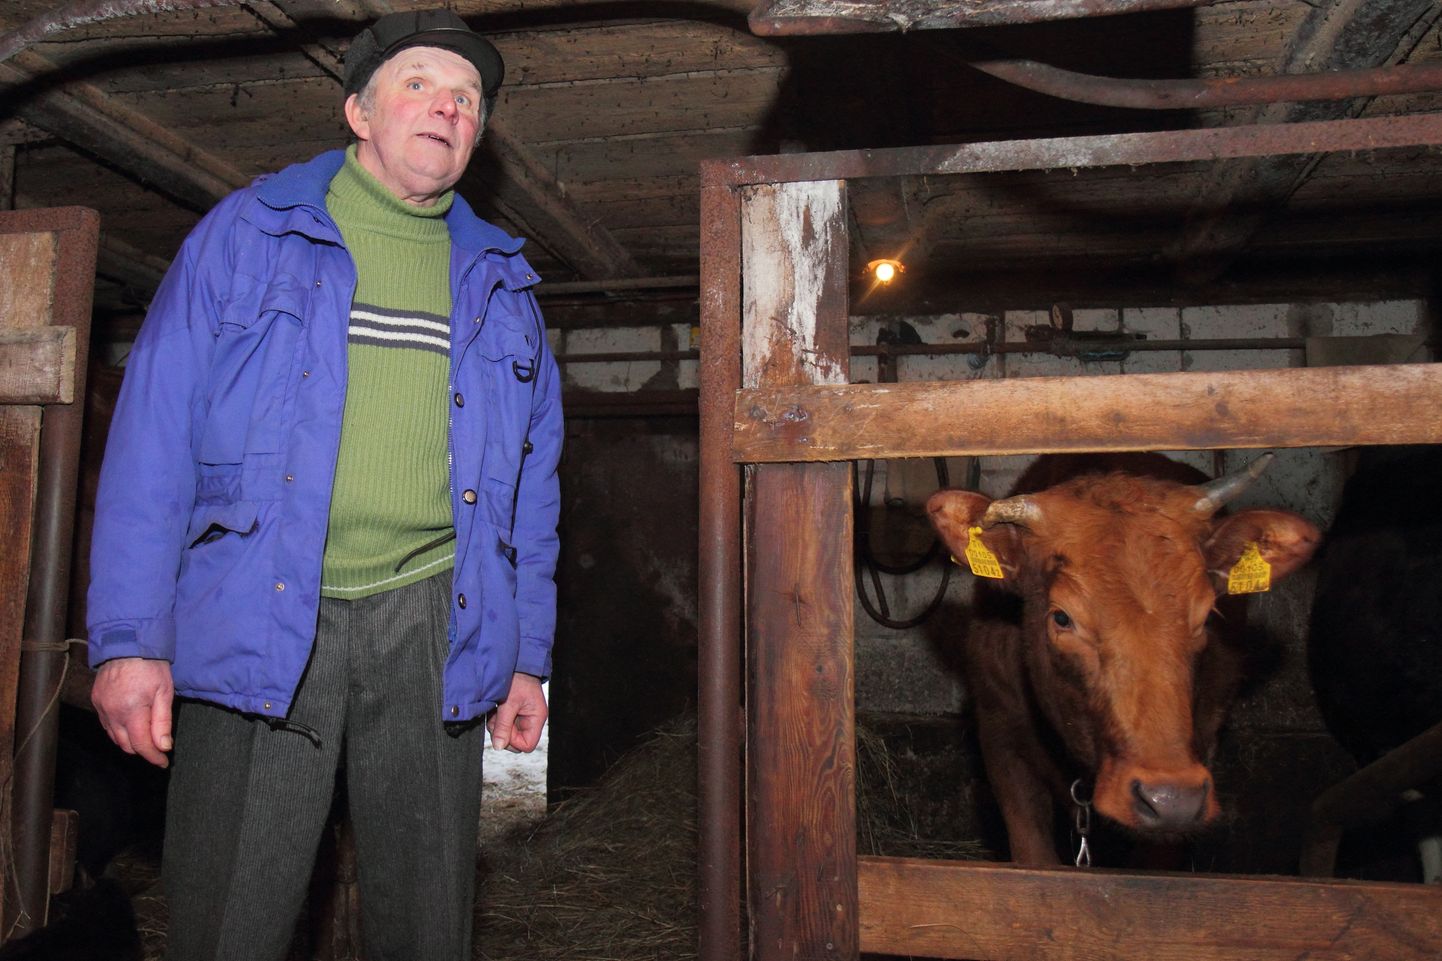 KULDSED AJAD: Lello talu peremees Mati Maripuu on esimene Saaremaa väiketootja, kelle lehmad lüpsavad  üle 9000 kilo.
EGON LIGI